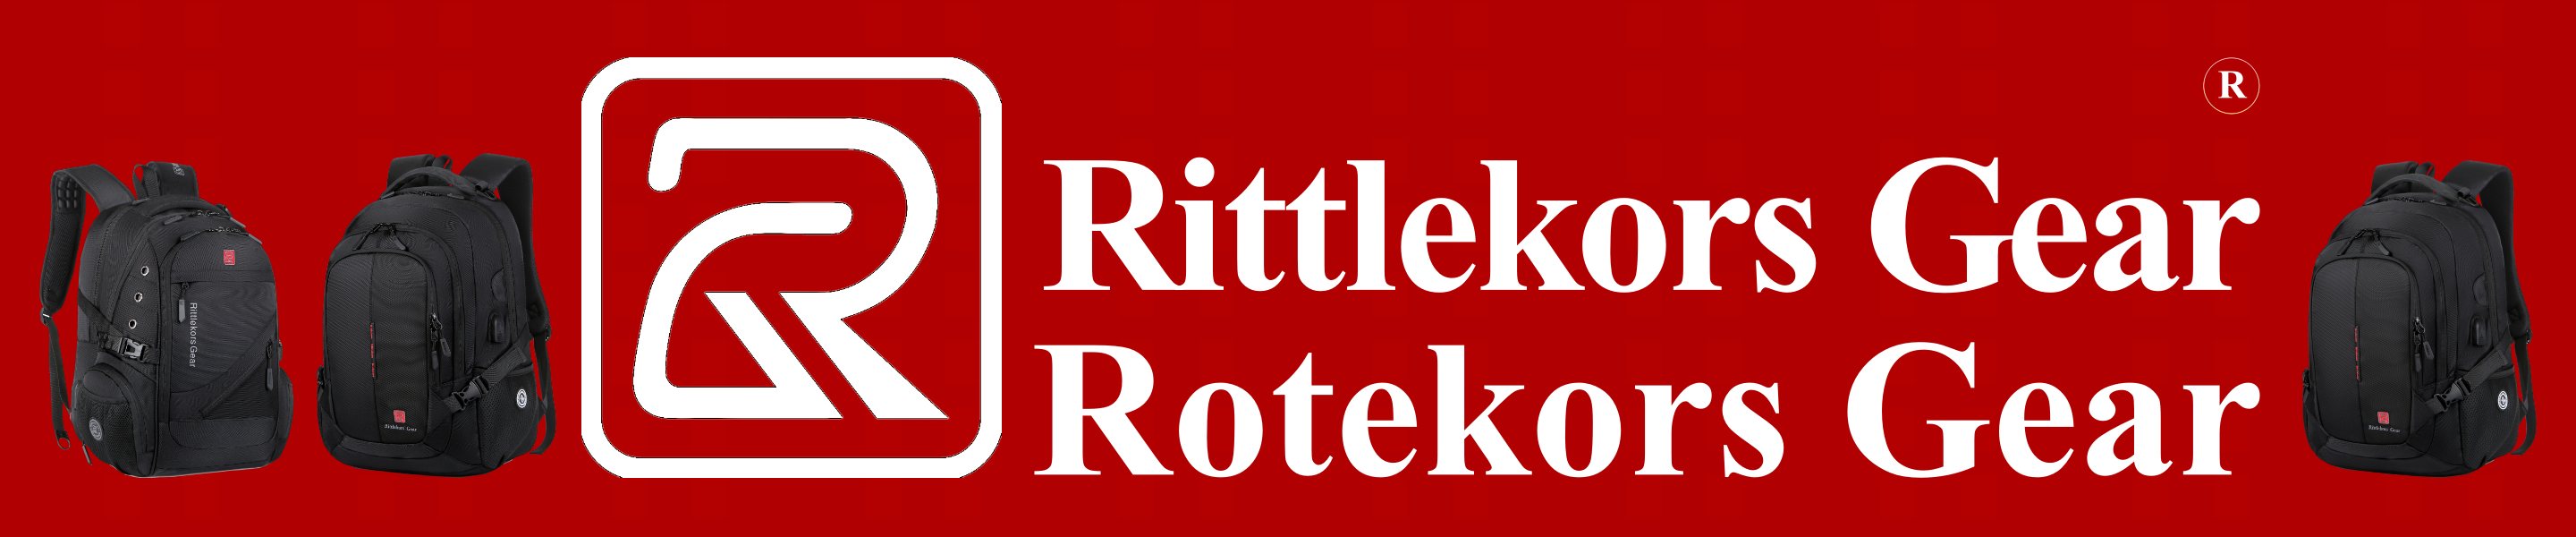 Официальный магазин рюкзаков Rotekors Gear и Rittlekors Gear в России